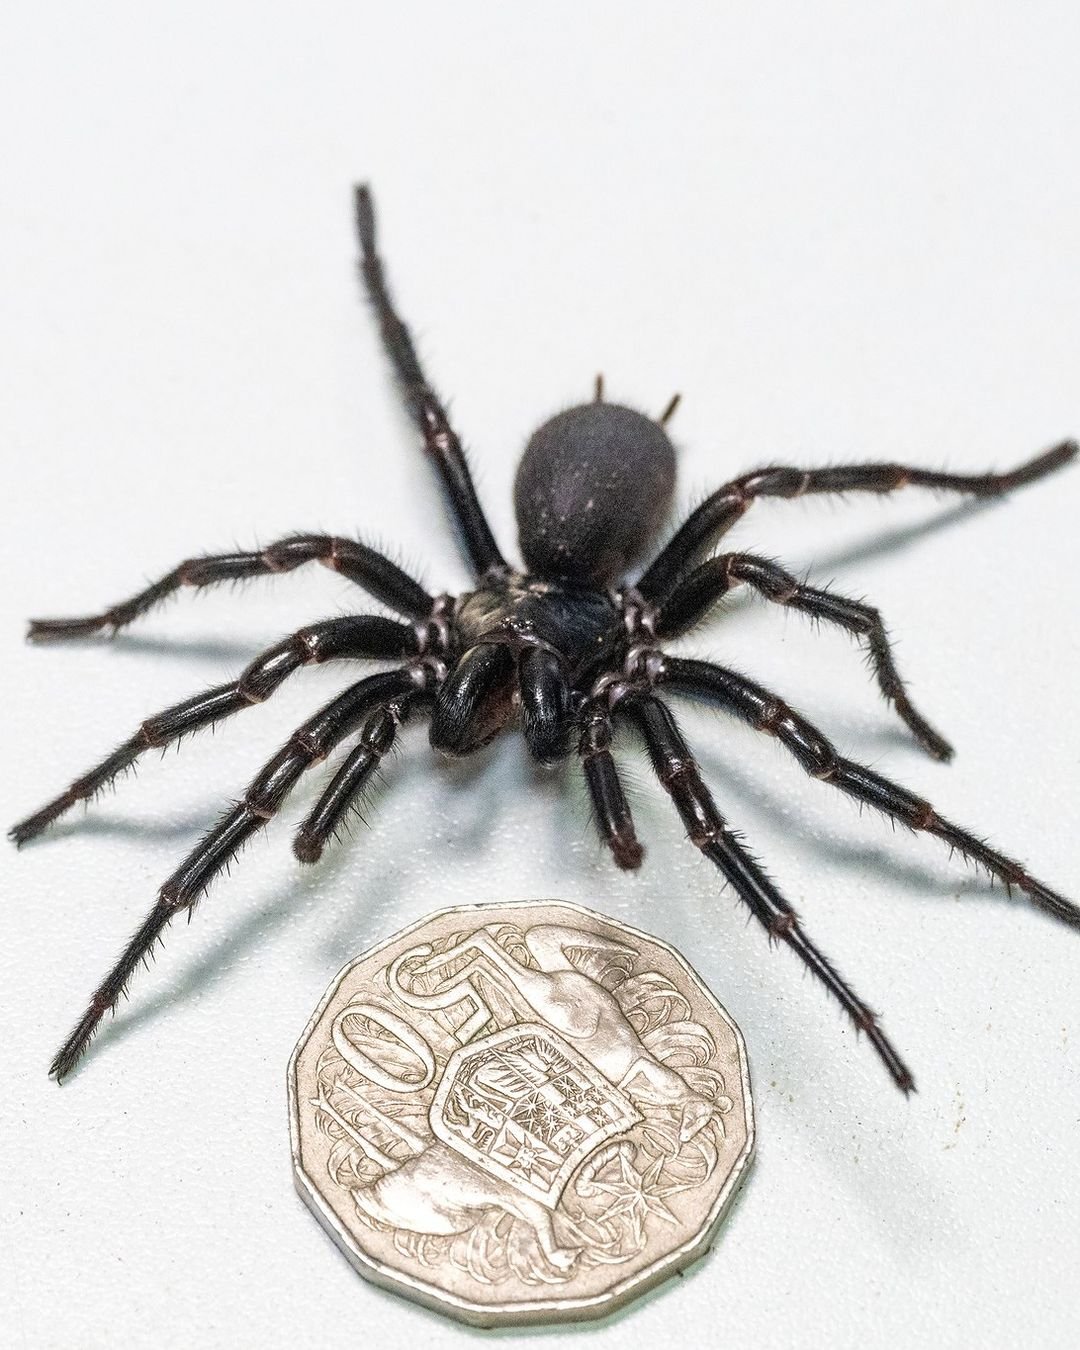 Aranha gigante e venenosa é encontrada por moradores em região litorânea